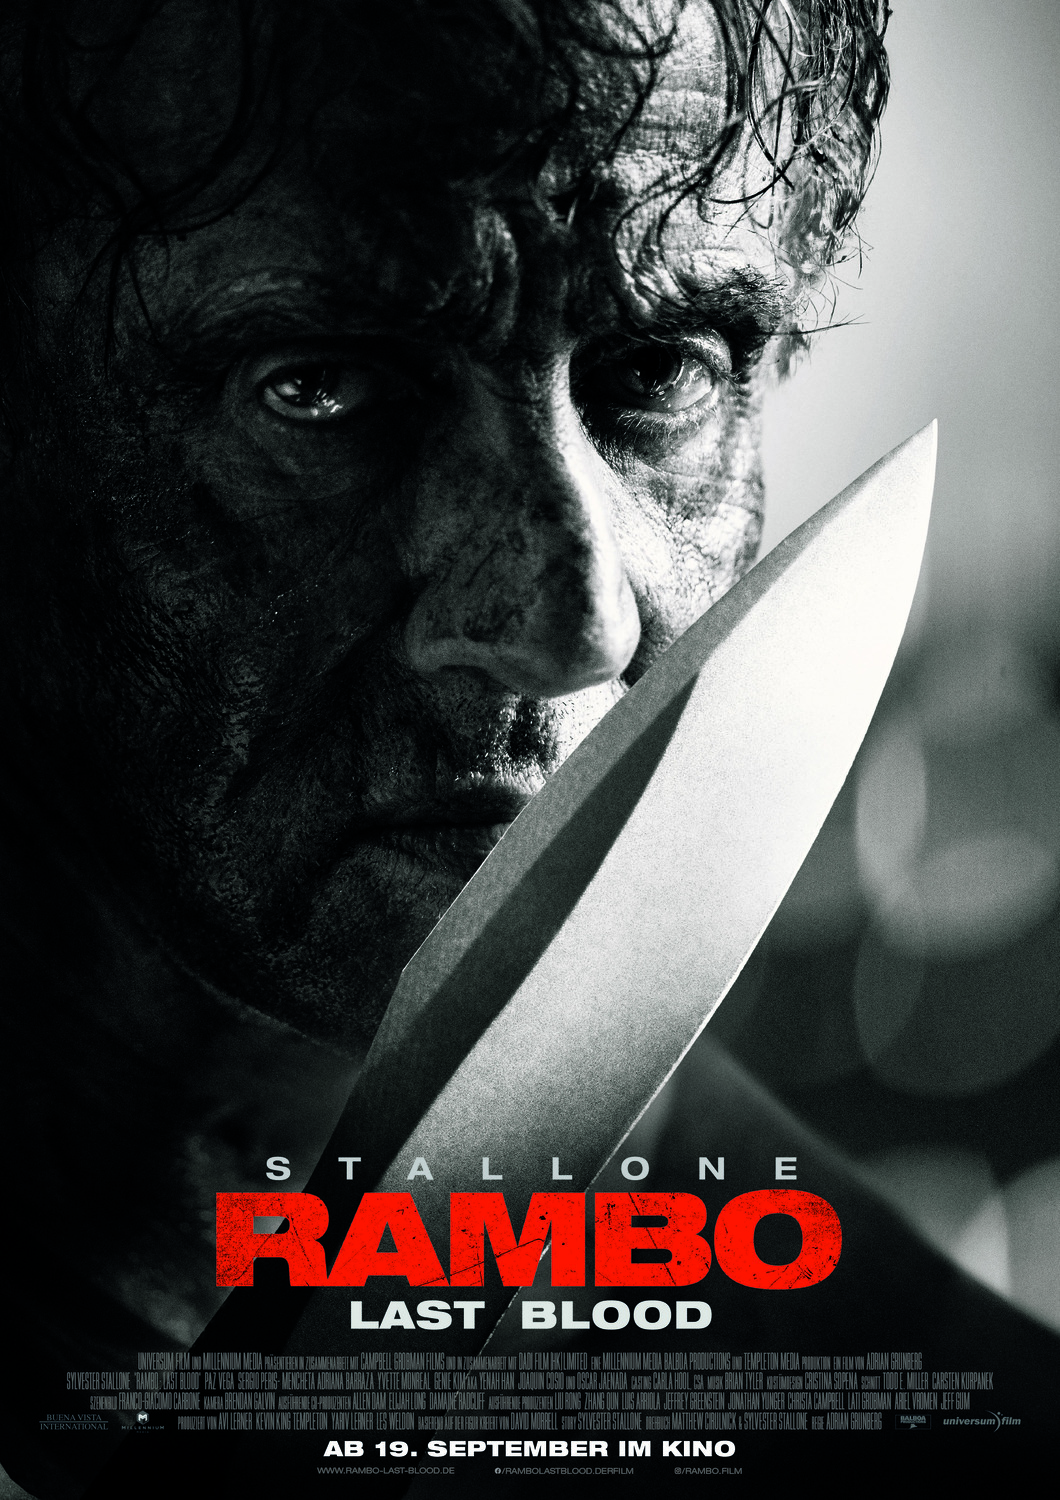 Rambo IV  Cinema em Cena - www.